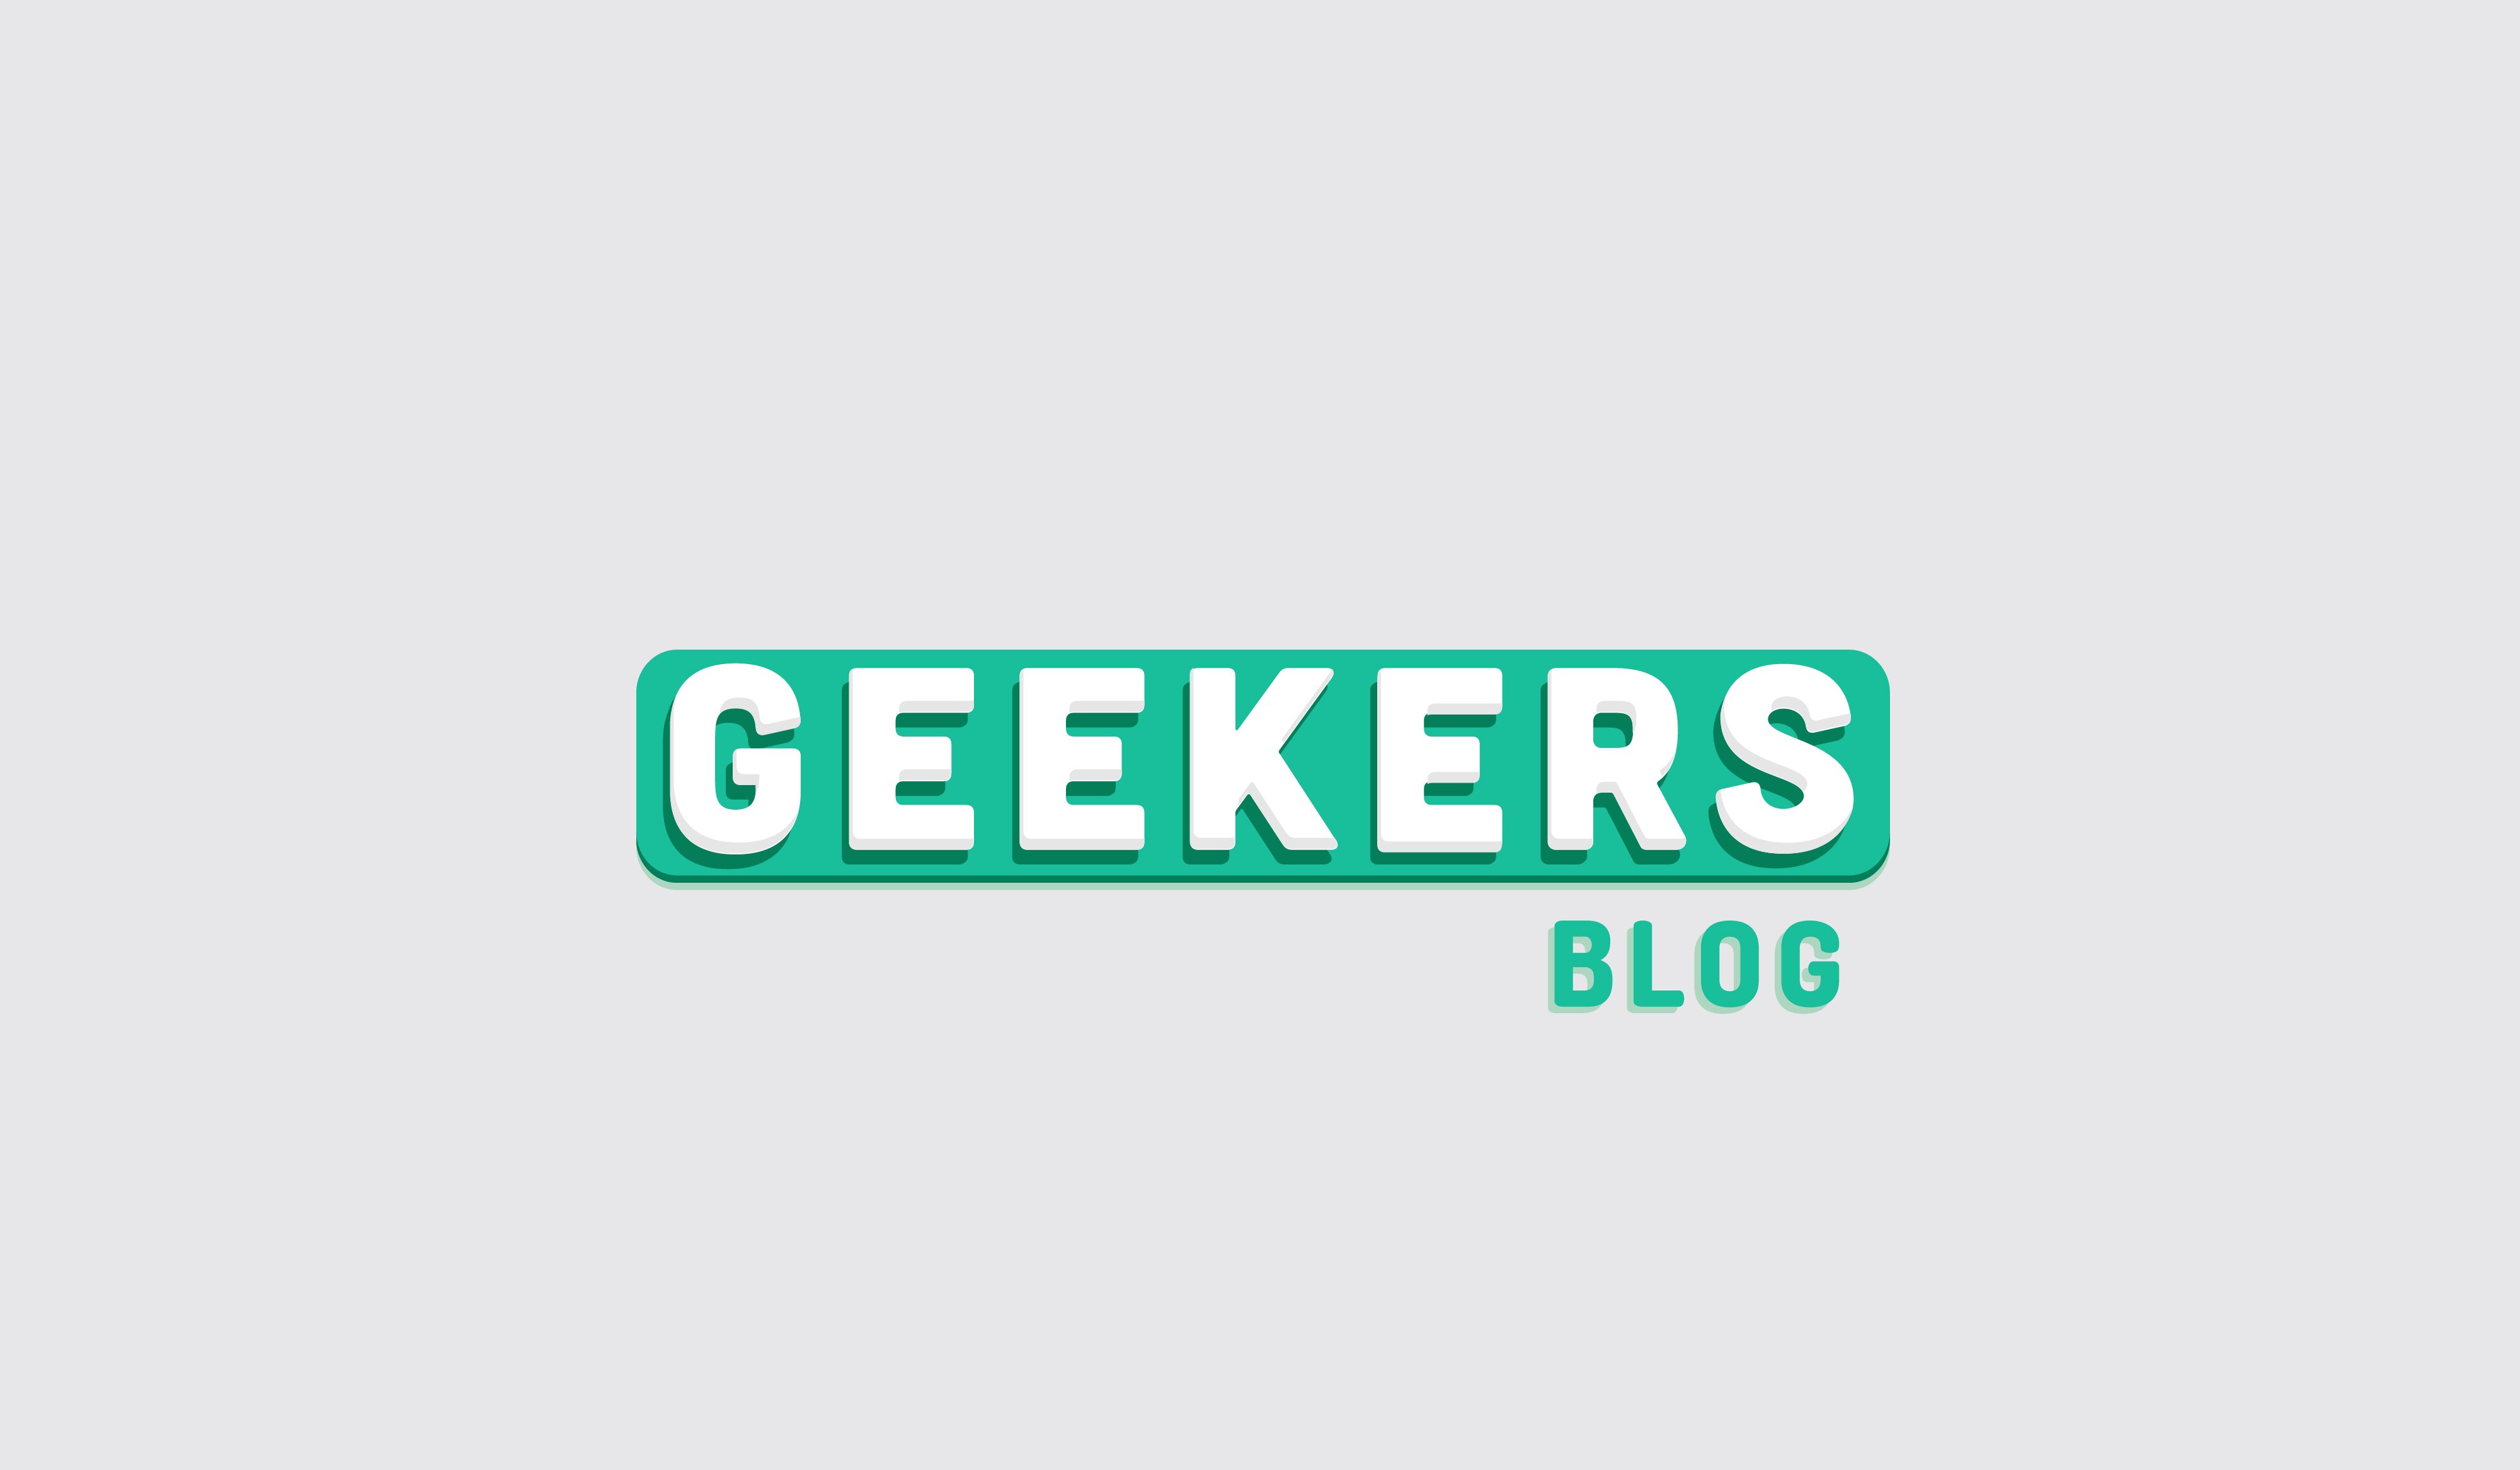 Las novedades del mundo de la #Tecnología y cultura #Geek! en #Español 💻📱🎮 - Geekers Blog creado en #ElSalvador 🇸🇻 | @Dres42